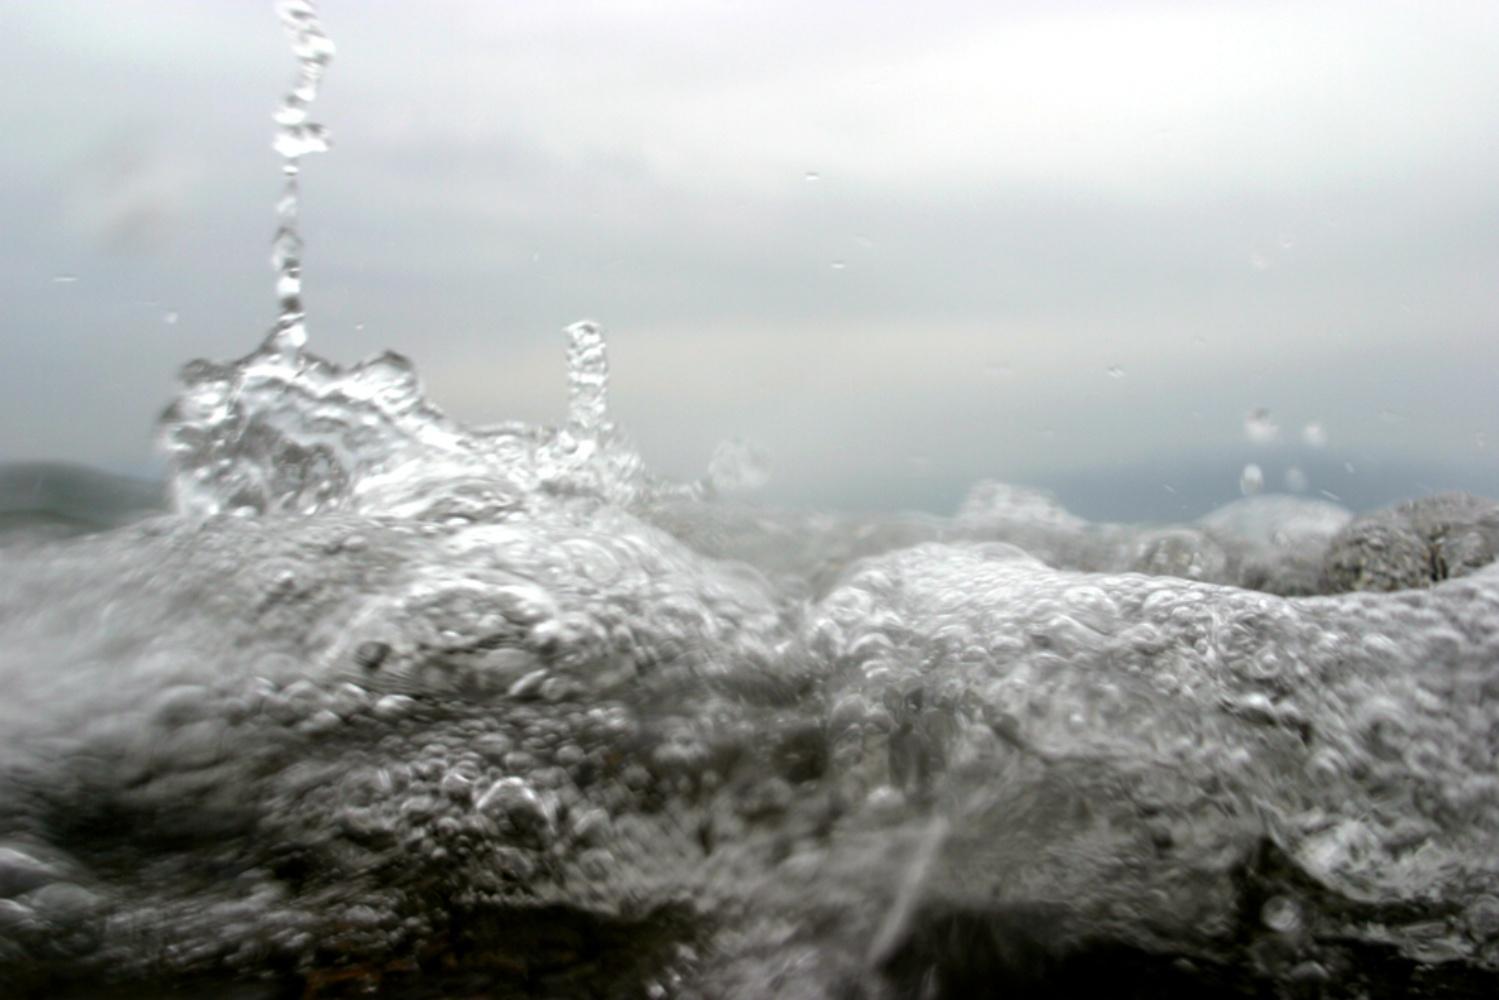 NAMI_009 - Syoin Kajii, Japanische Fotografie, Ozean, Wellen, Wasser, Natur, Kunst